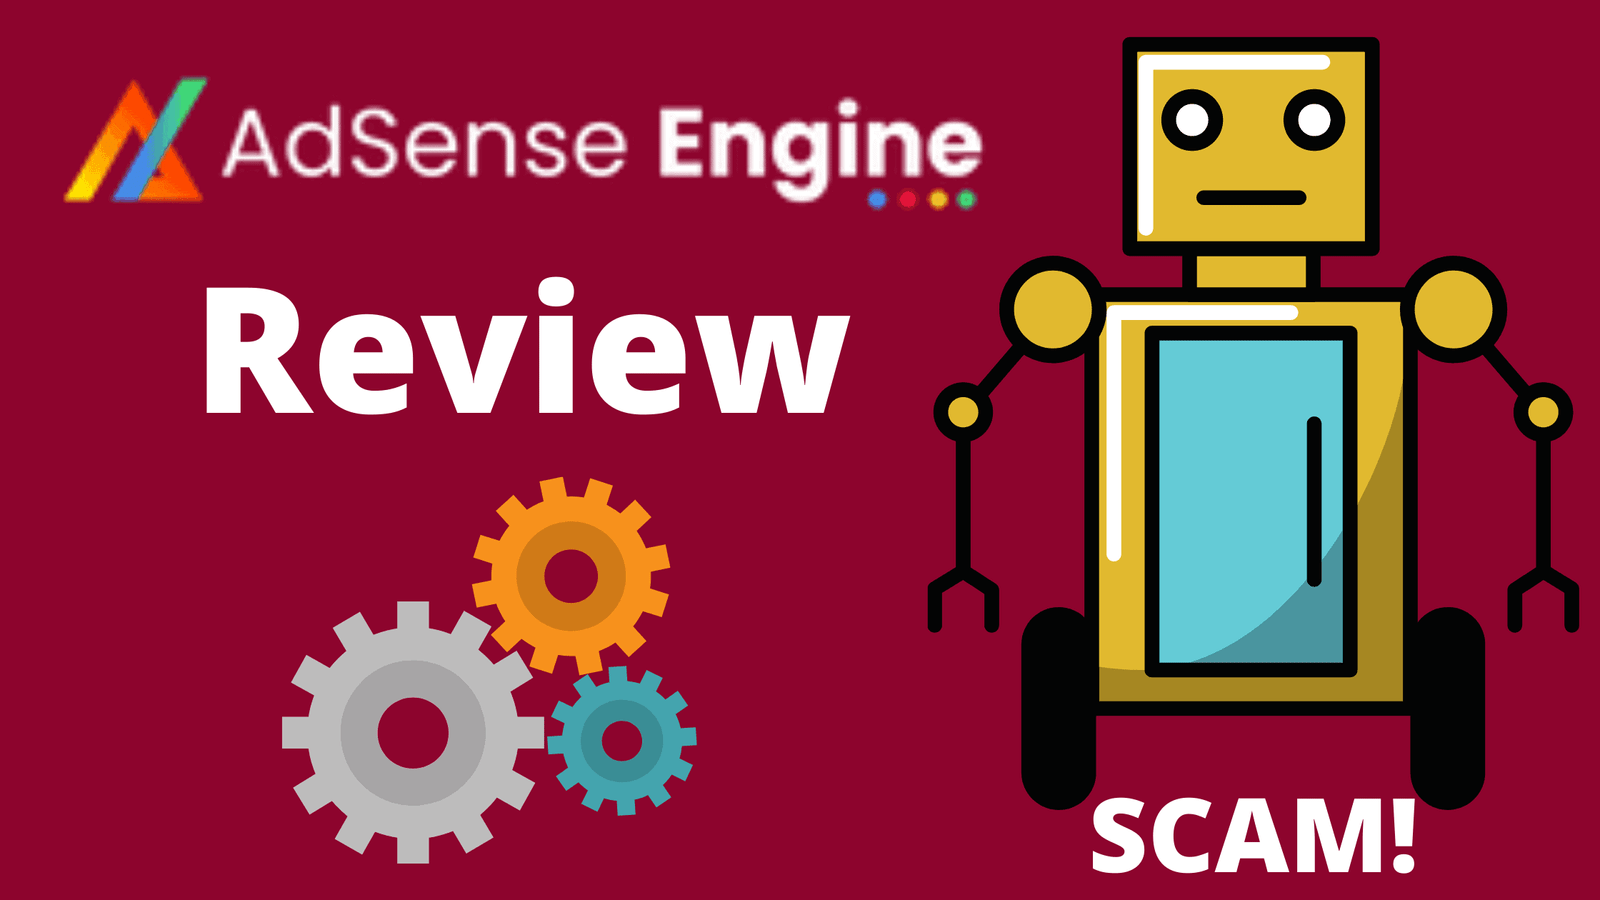 AdSense Engine Review Scam